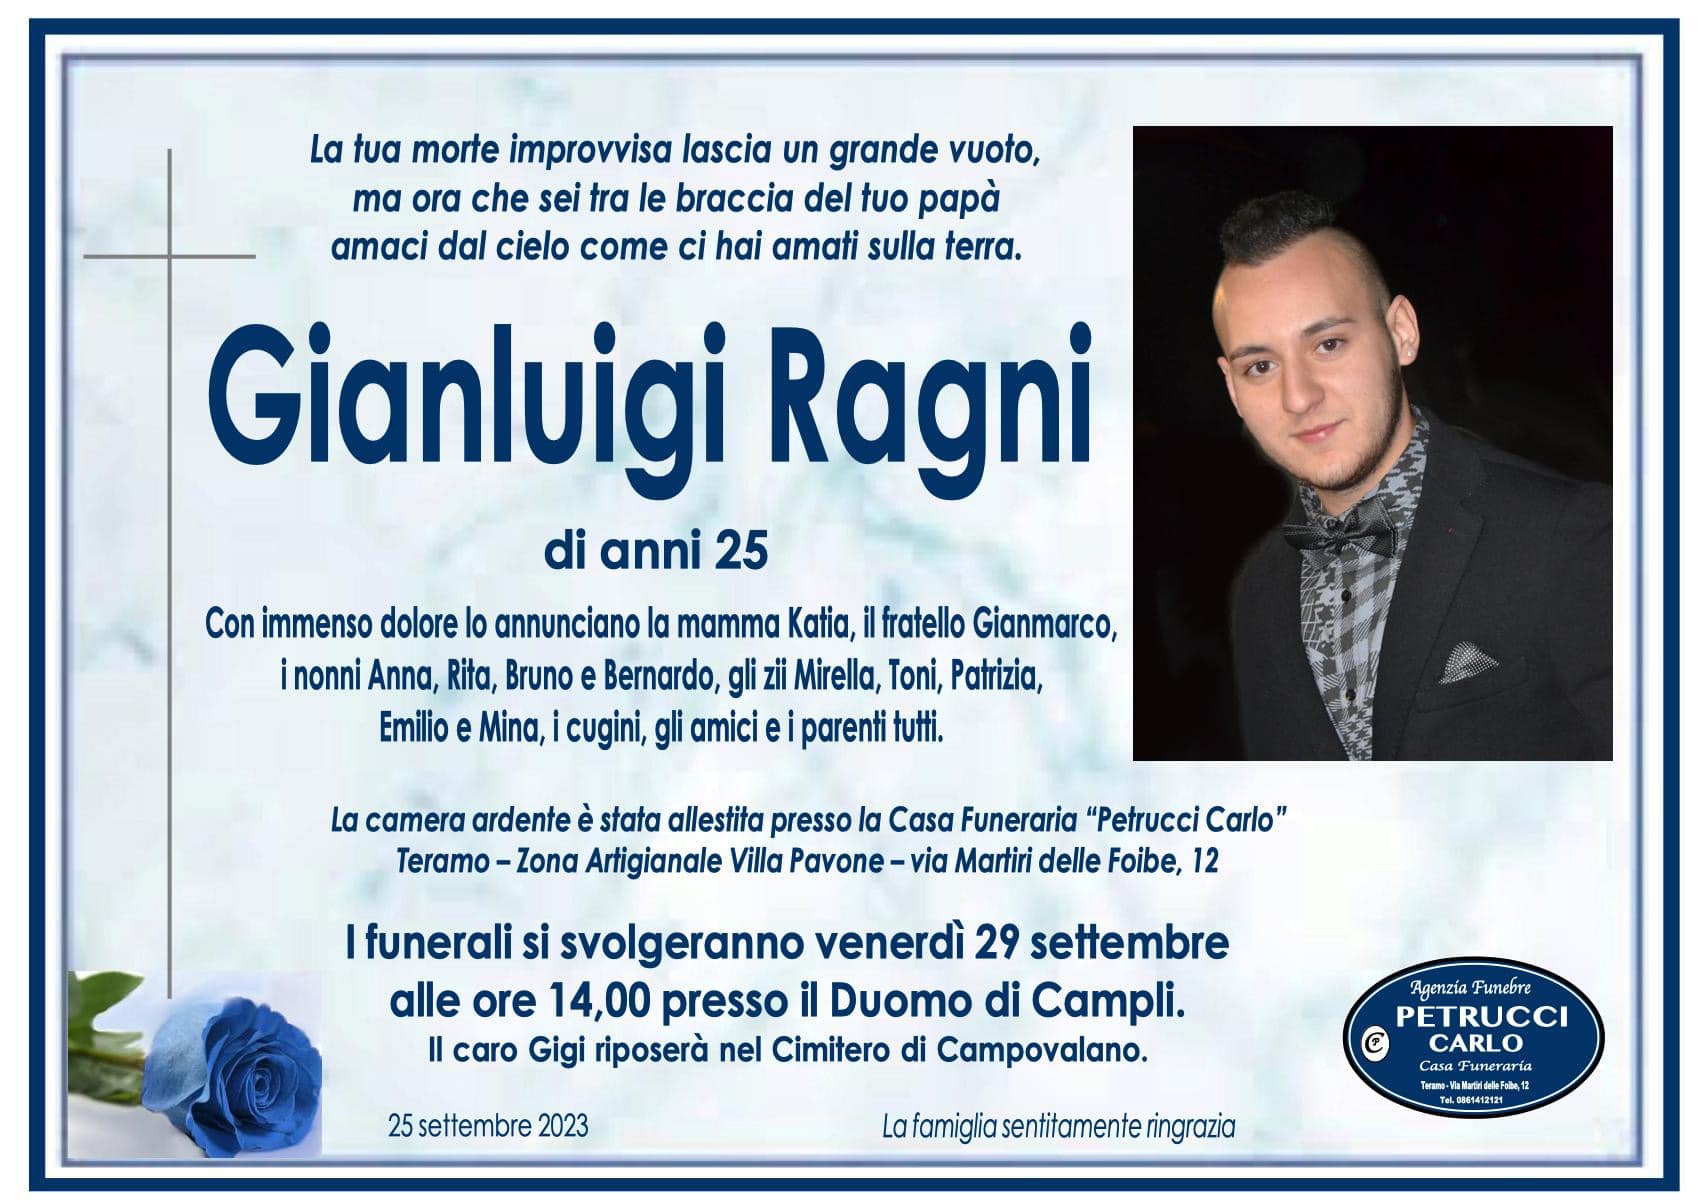 Venerdì 28 settembre: Giornata dell'Addio a Gianluigi Ragni, L'Operaio di 25 Anni di Campli Deceduto in un Tragico Incidente Elettrico